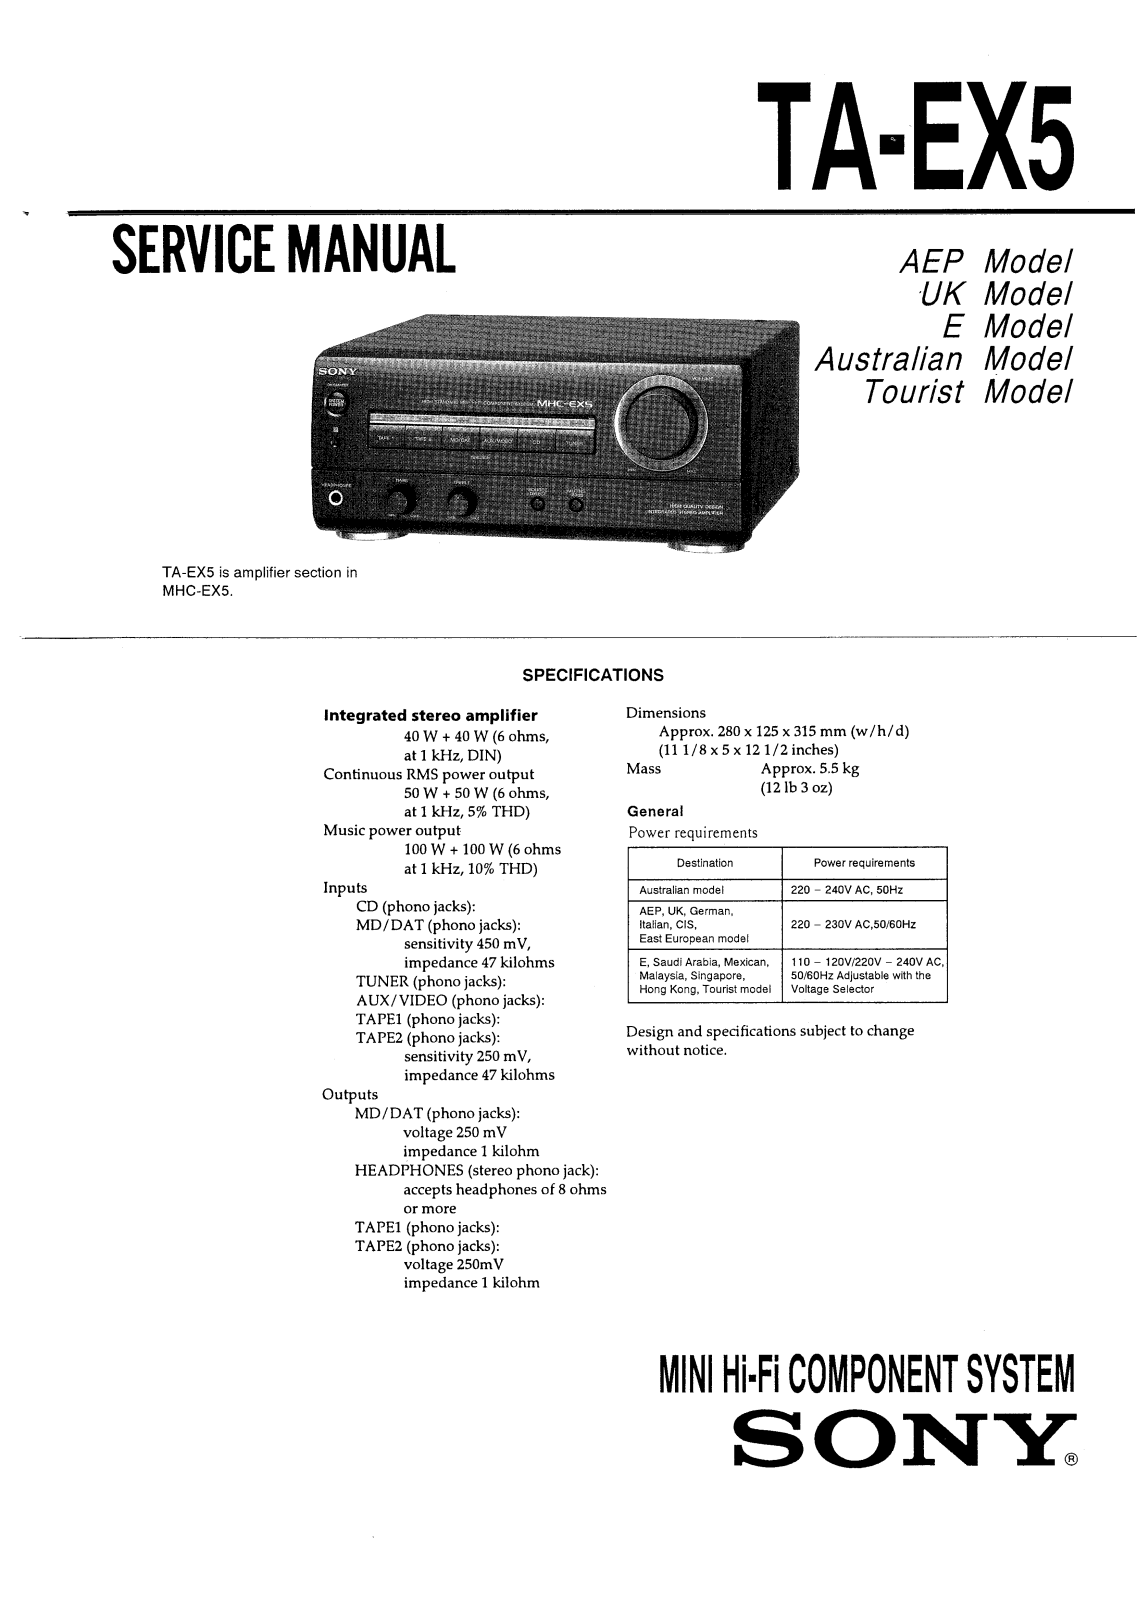 SONY TA-EX5 Service Manual